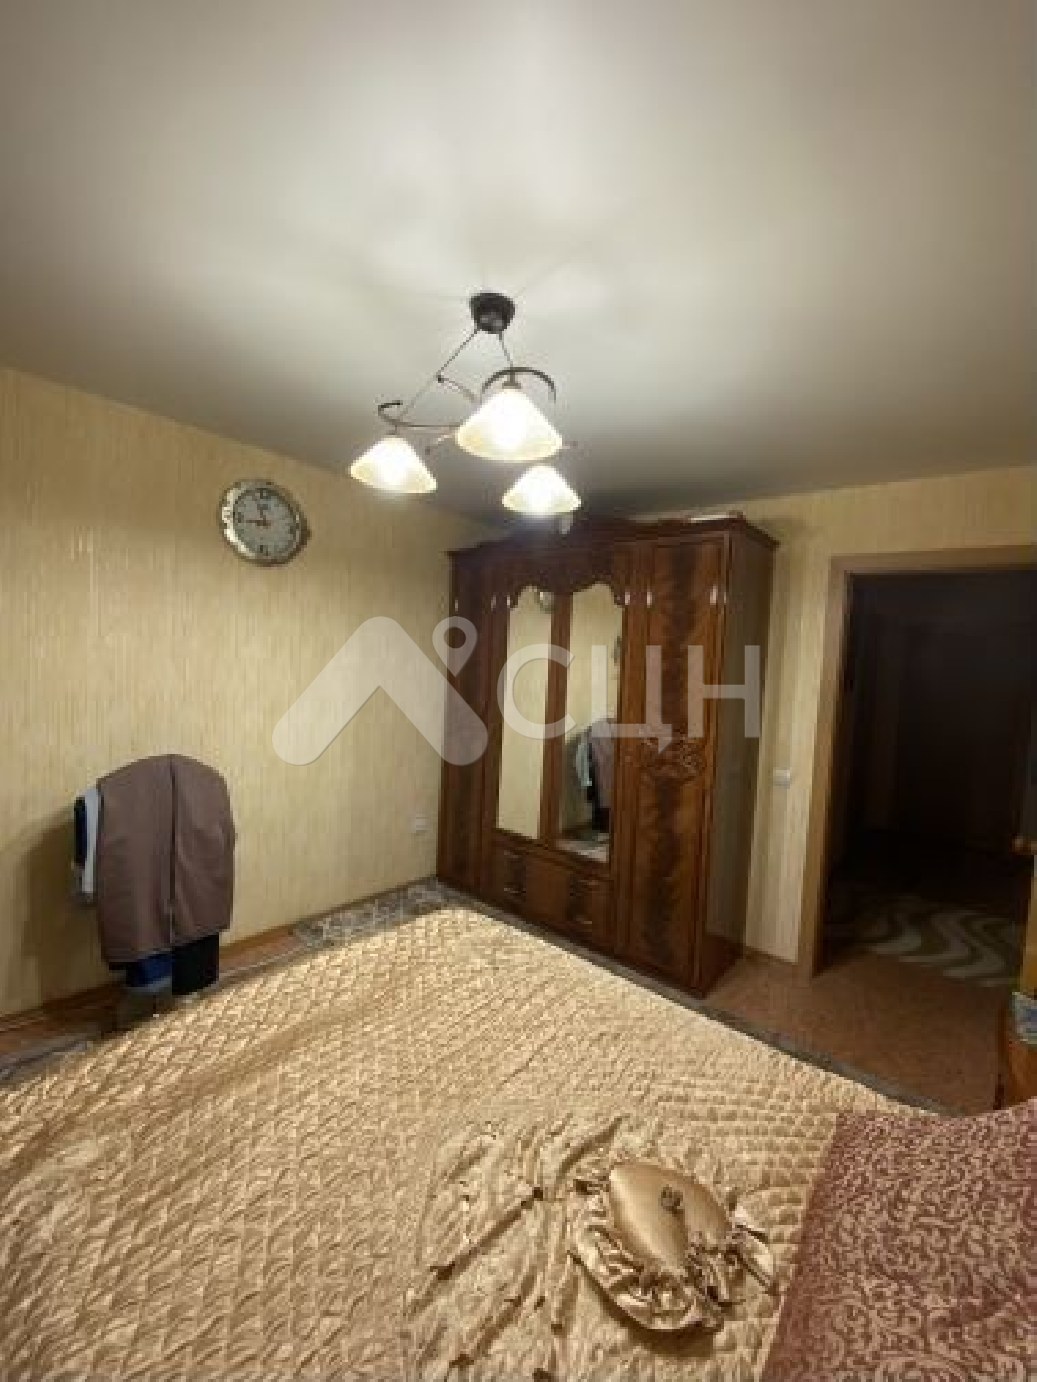 купить квартиру в сарове
: Г. Саров, улица Лесная, 32, 3-комн квартира, этаж 4 из 5, продажа.